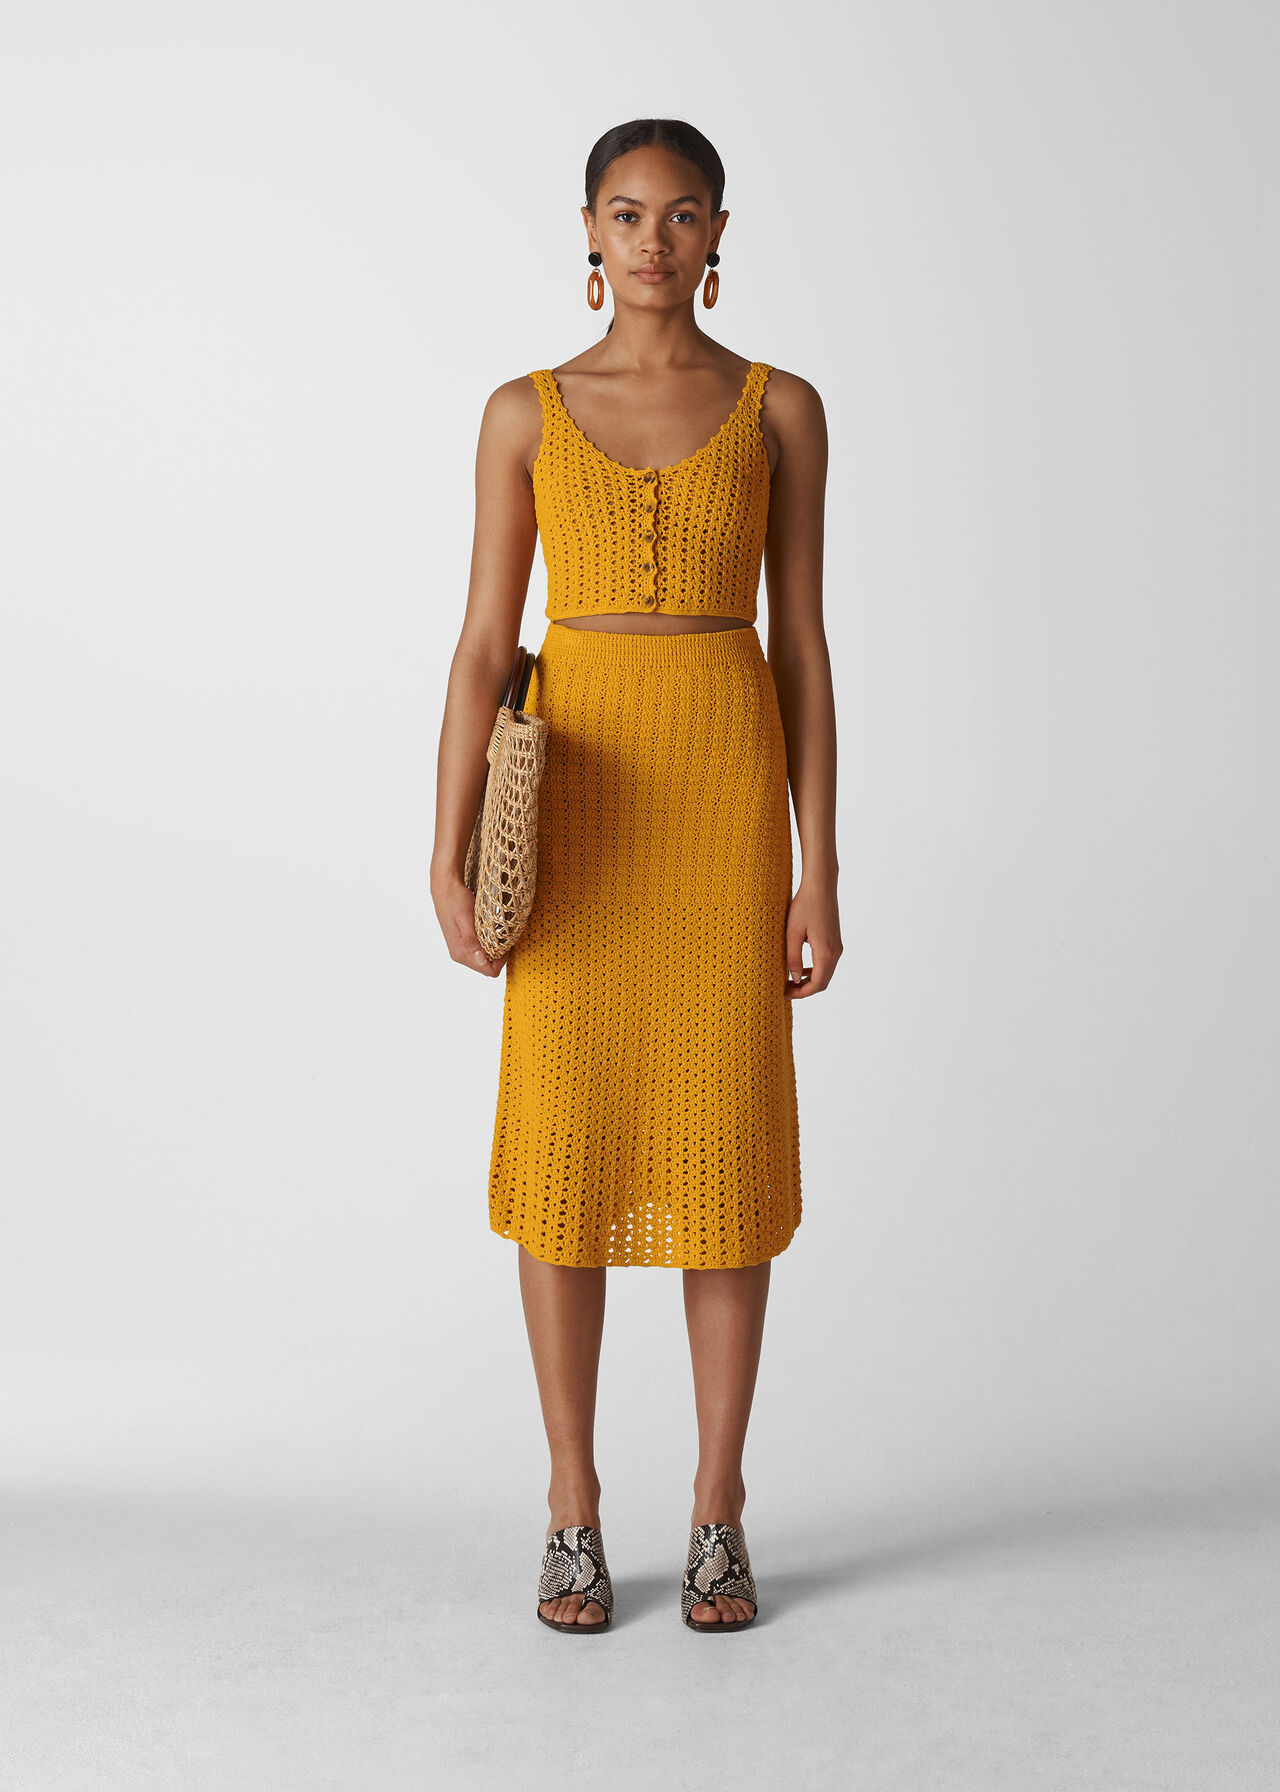 Hand Crochet Skirt Yellow